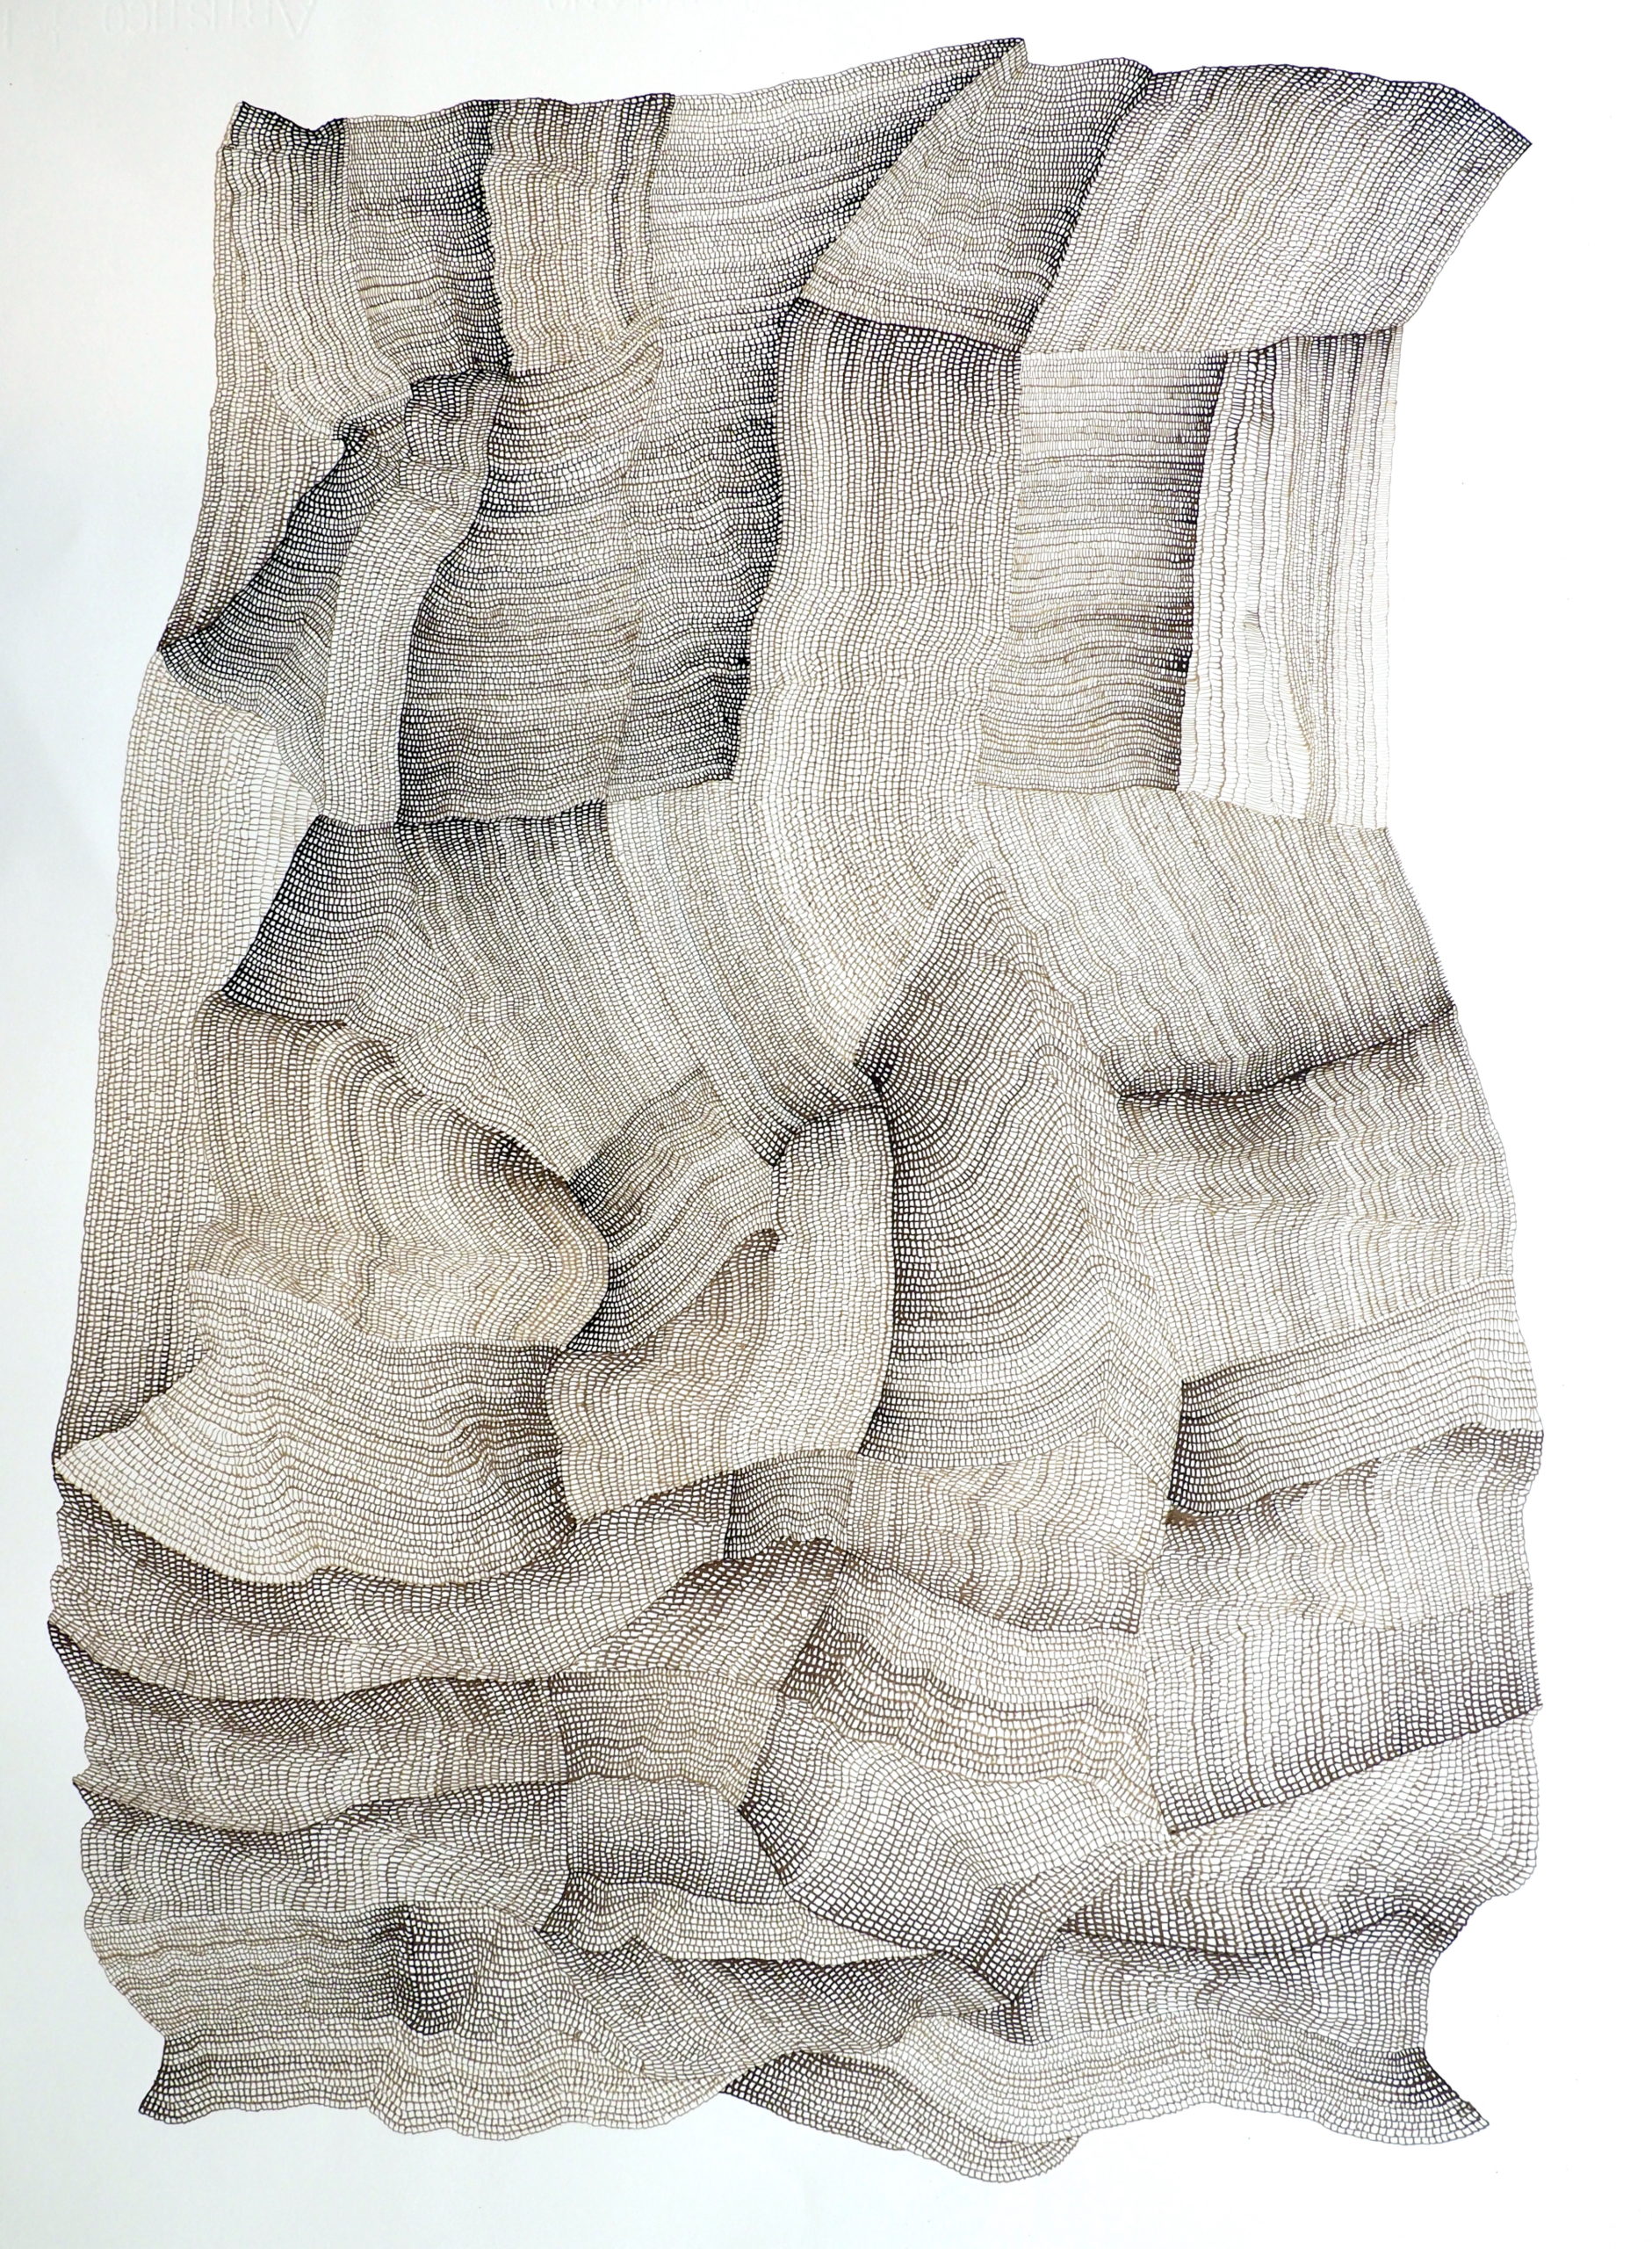 Hala Schoukair, Sans titre, encre sur papier, 76 x 56 cm